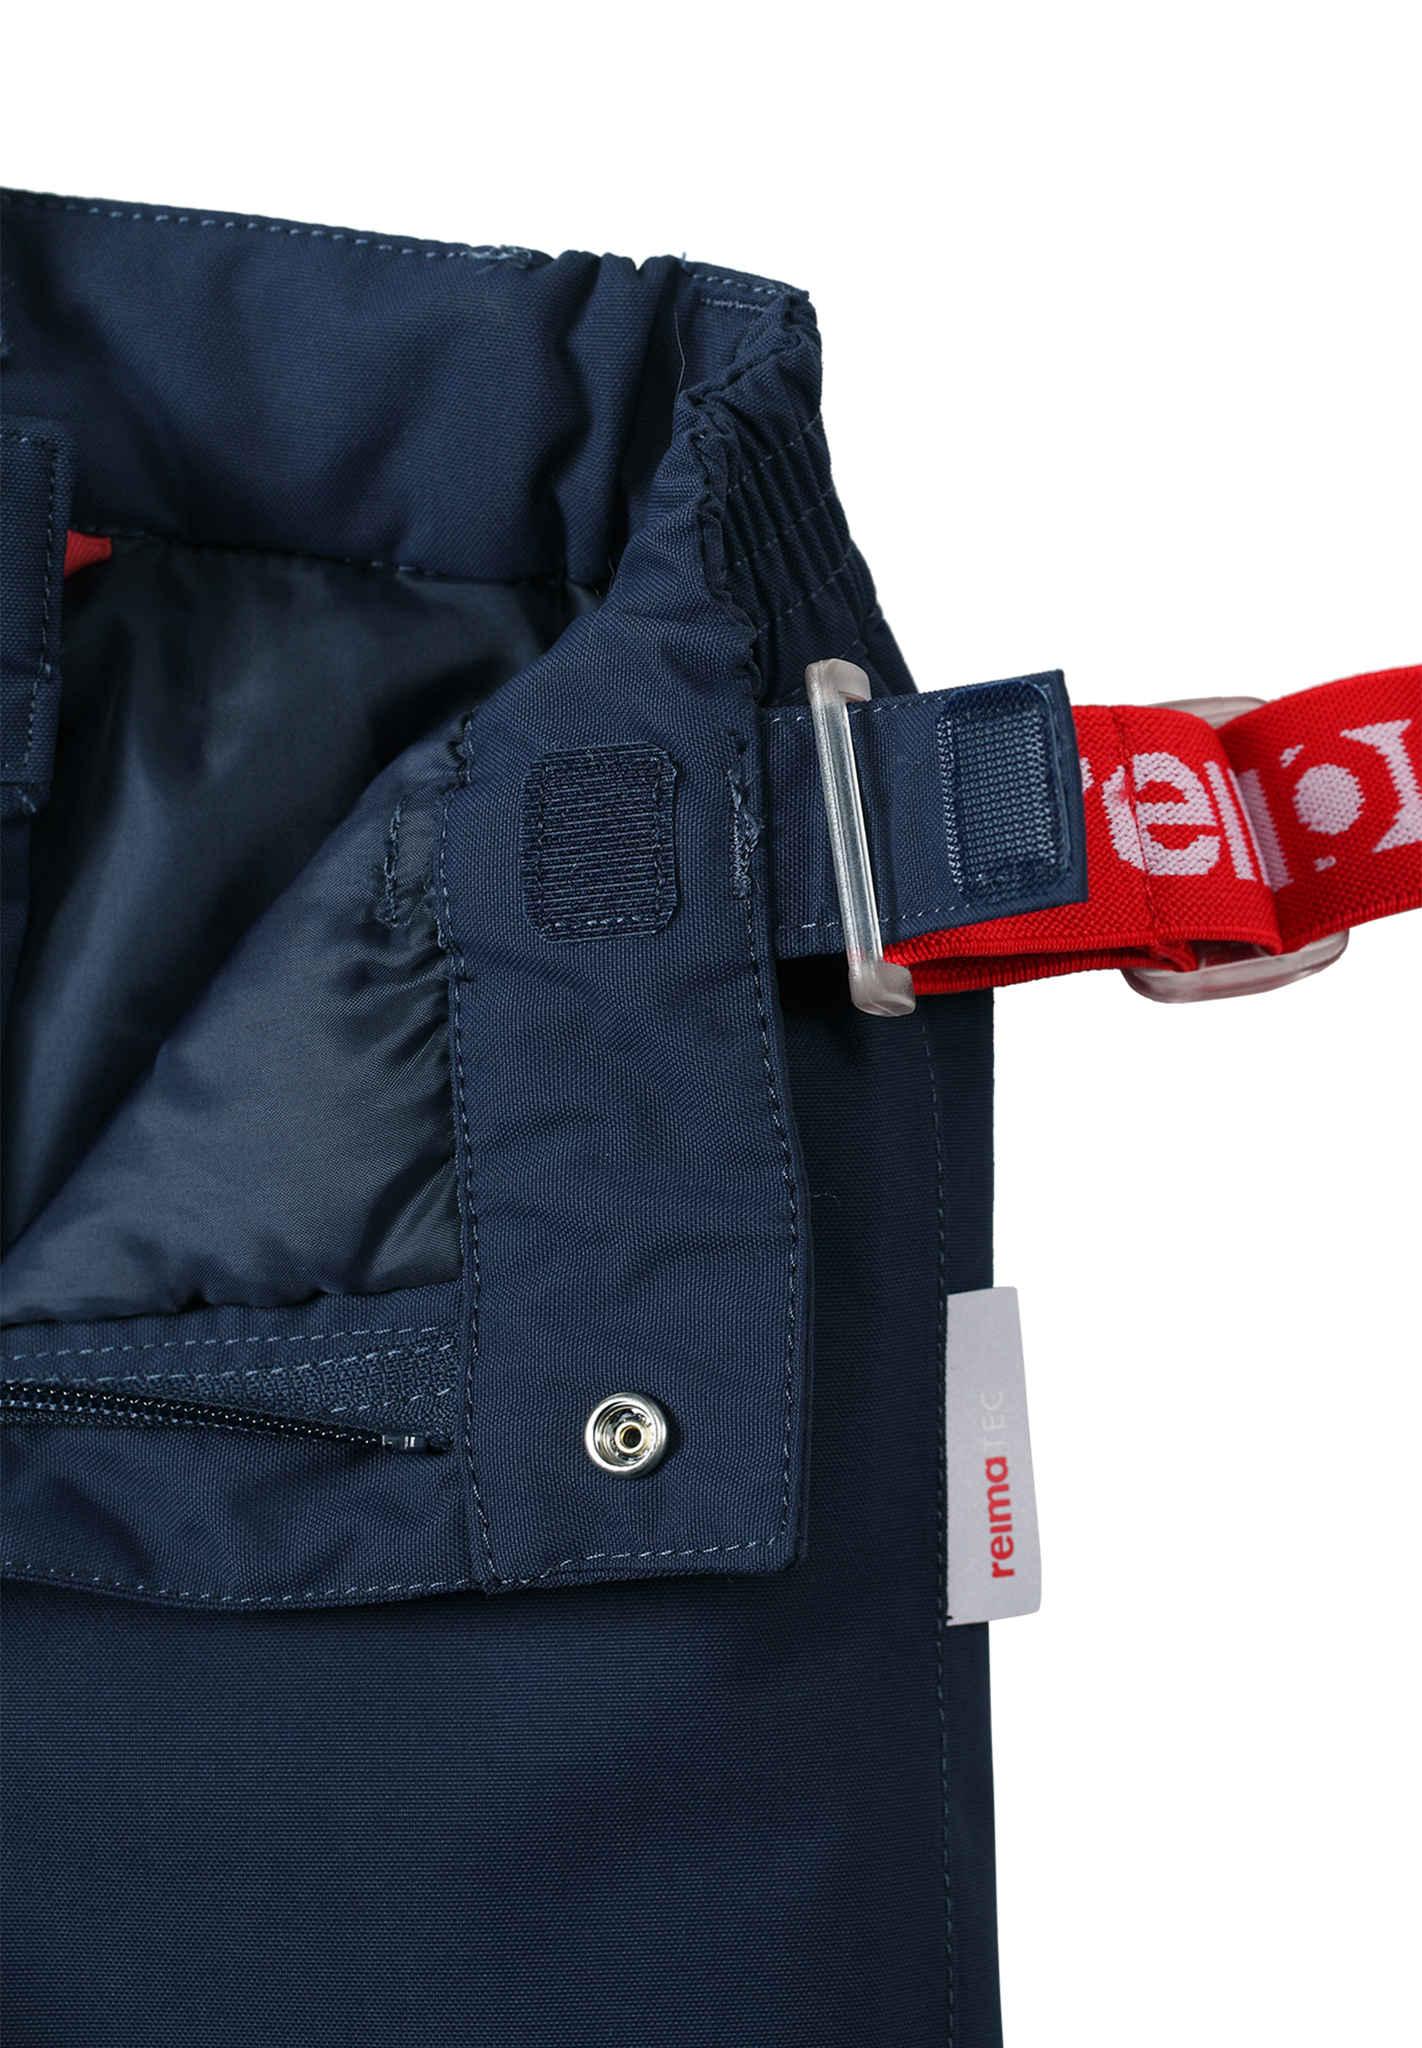 Зимние брюки Reimatec, Loikka Navy – купить по выгодным ценам с доставкойиз-за рубежа через сервис «CDEK.Shopping»